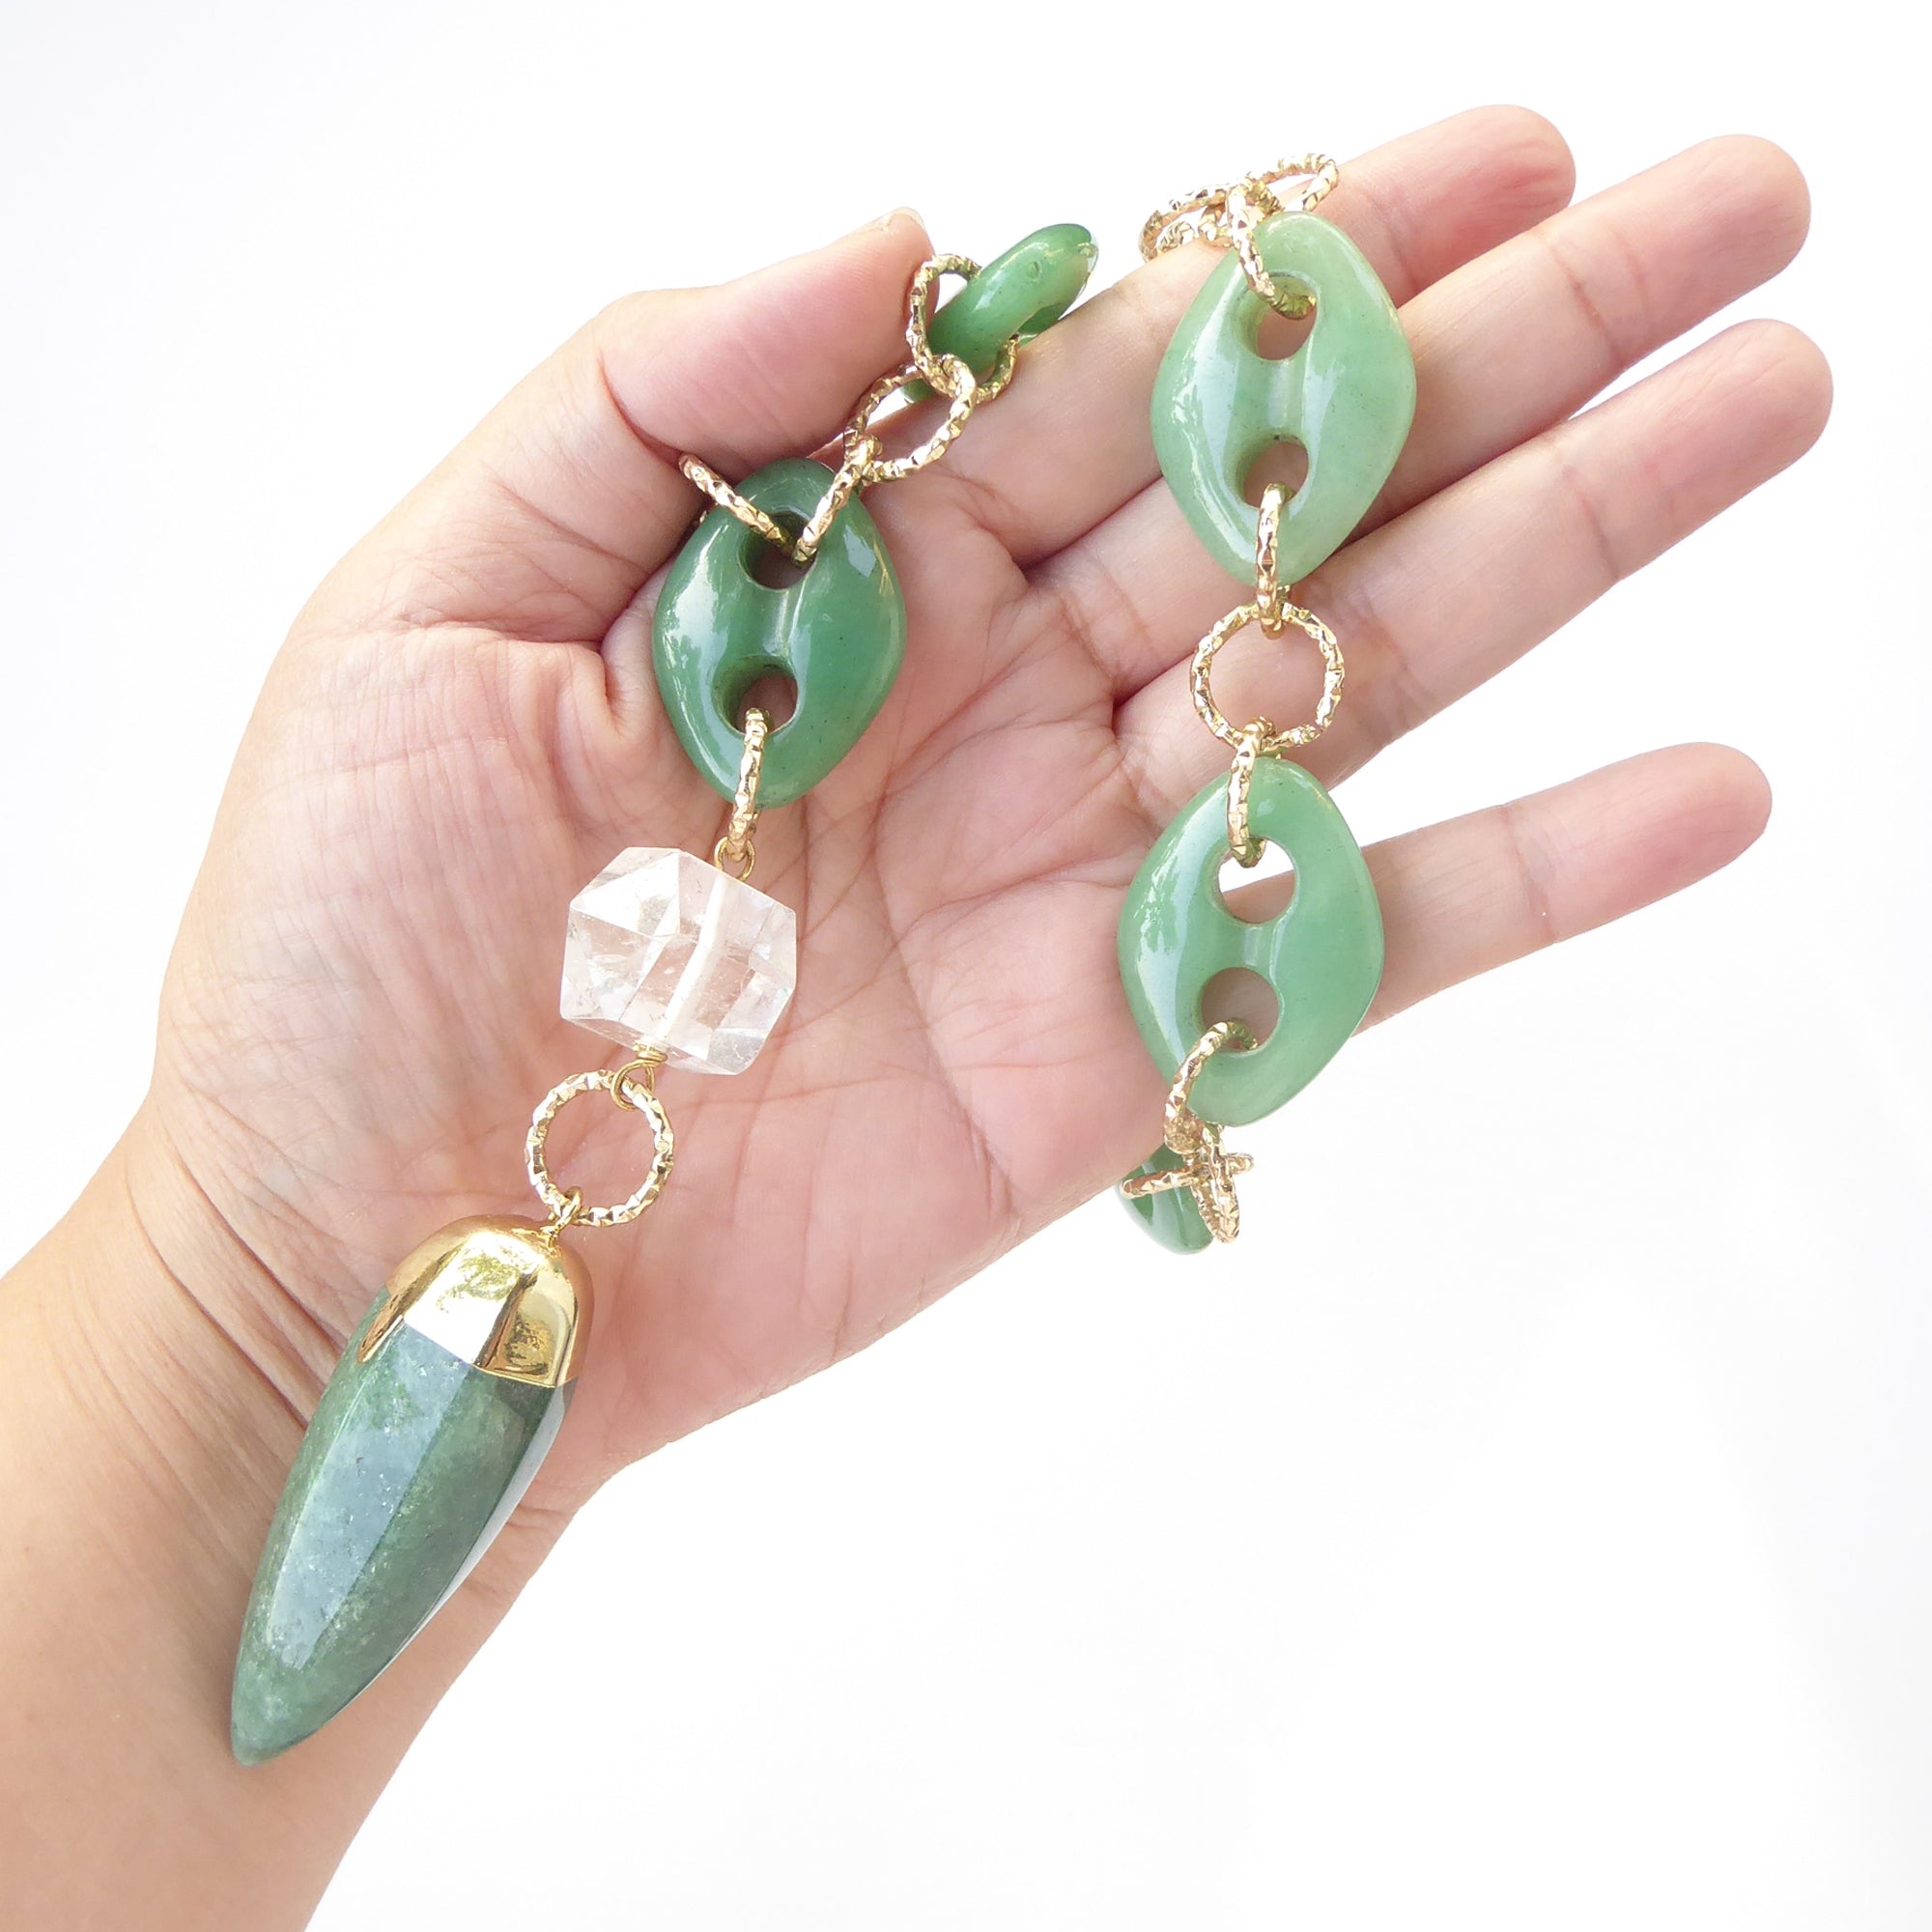 Green quartz spike necklace by Jenny Dayco 7